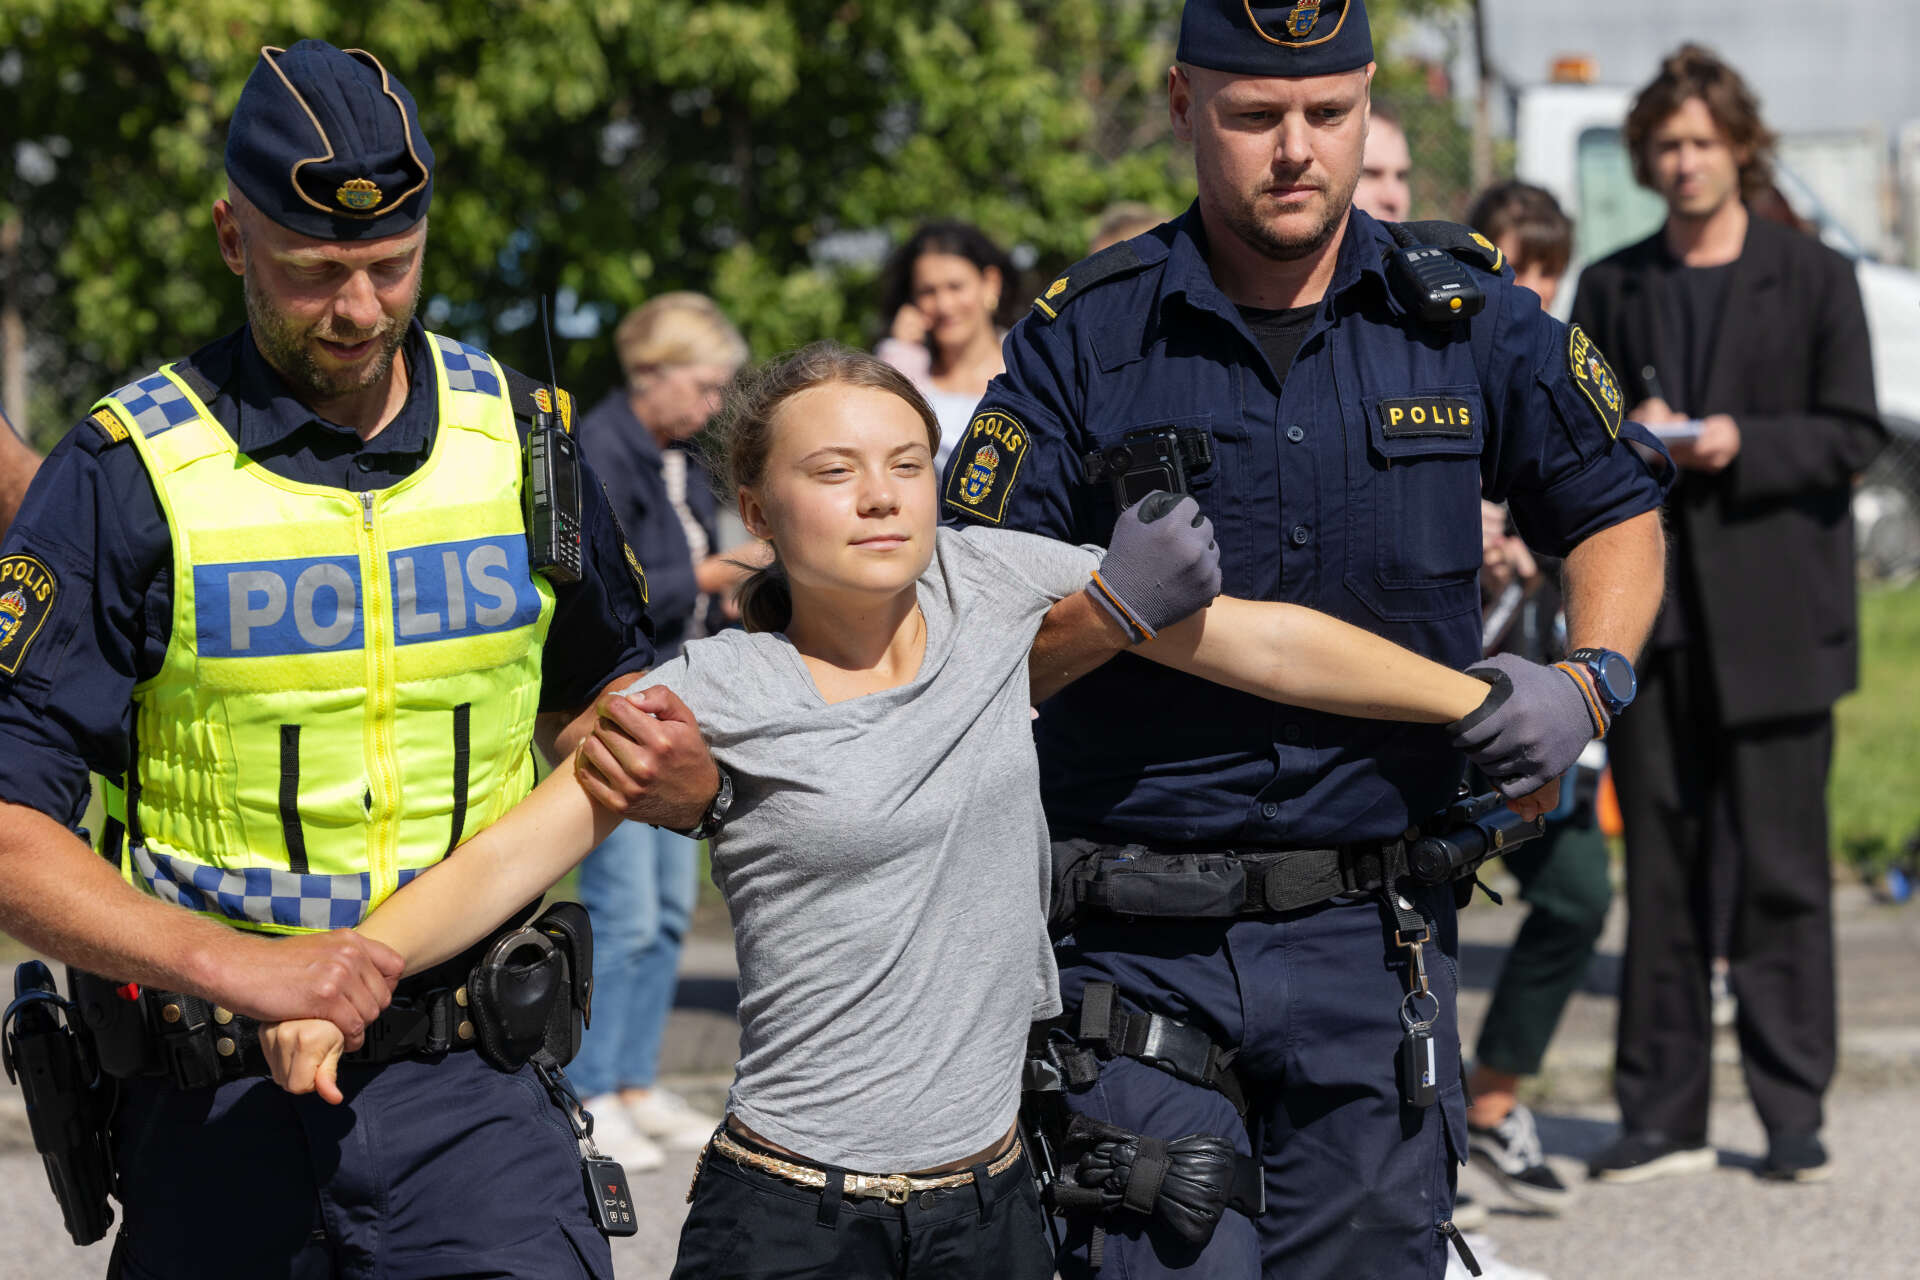 Här lyfts klimataktivisten Greta Thunberg bort av polis när hon deltagit i en klimataktion i Oljehamnen i Malmö den 24 juli. Arkivbild.